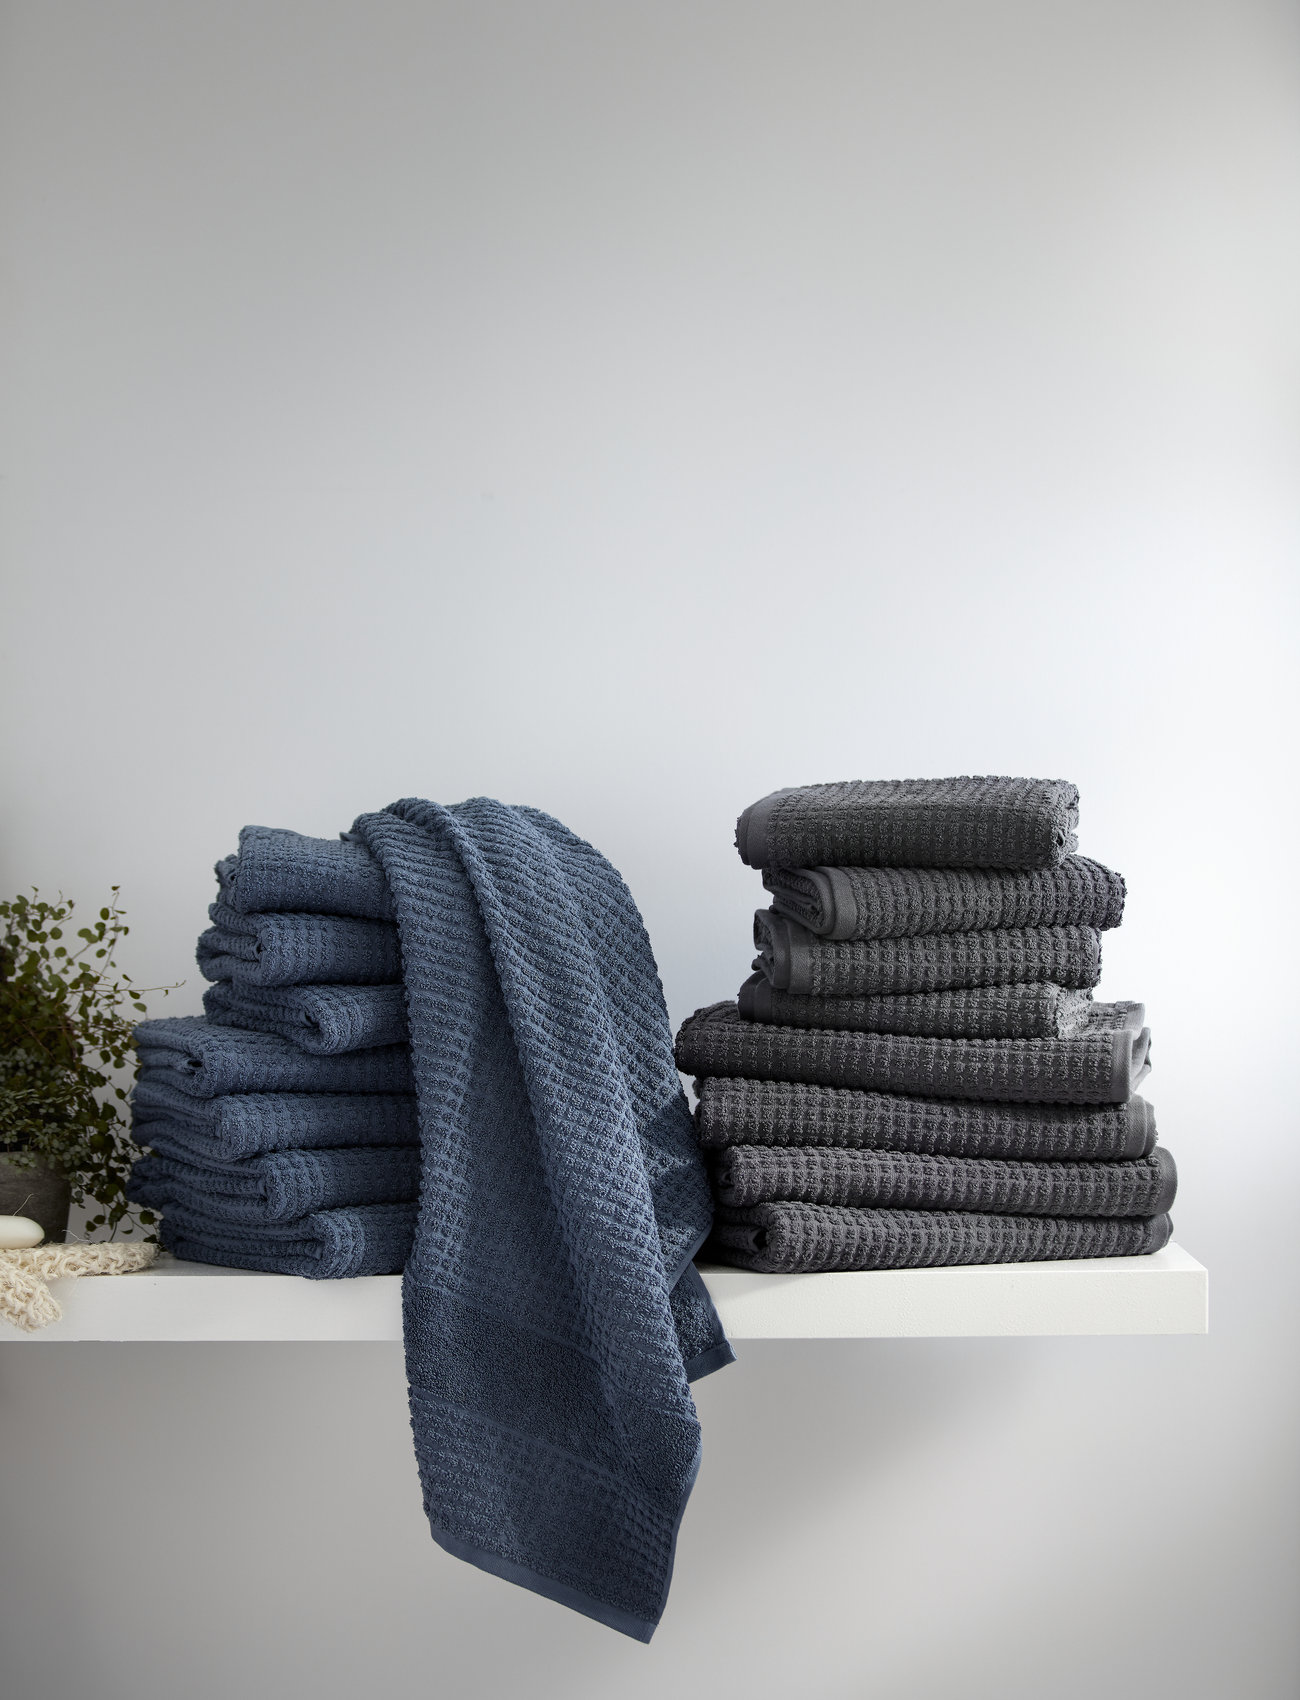 Juna - Check Towels 70x140 4 pcs, 50x100 2 pcs (615057-58)dark grey - die niedrigsten preise - dark grey - 1